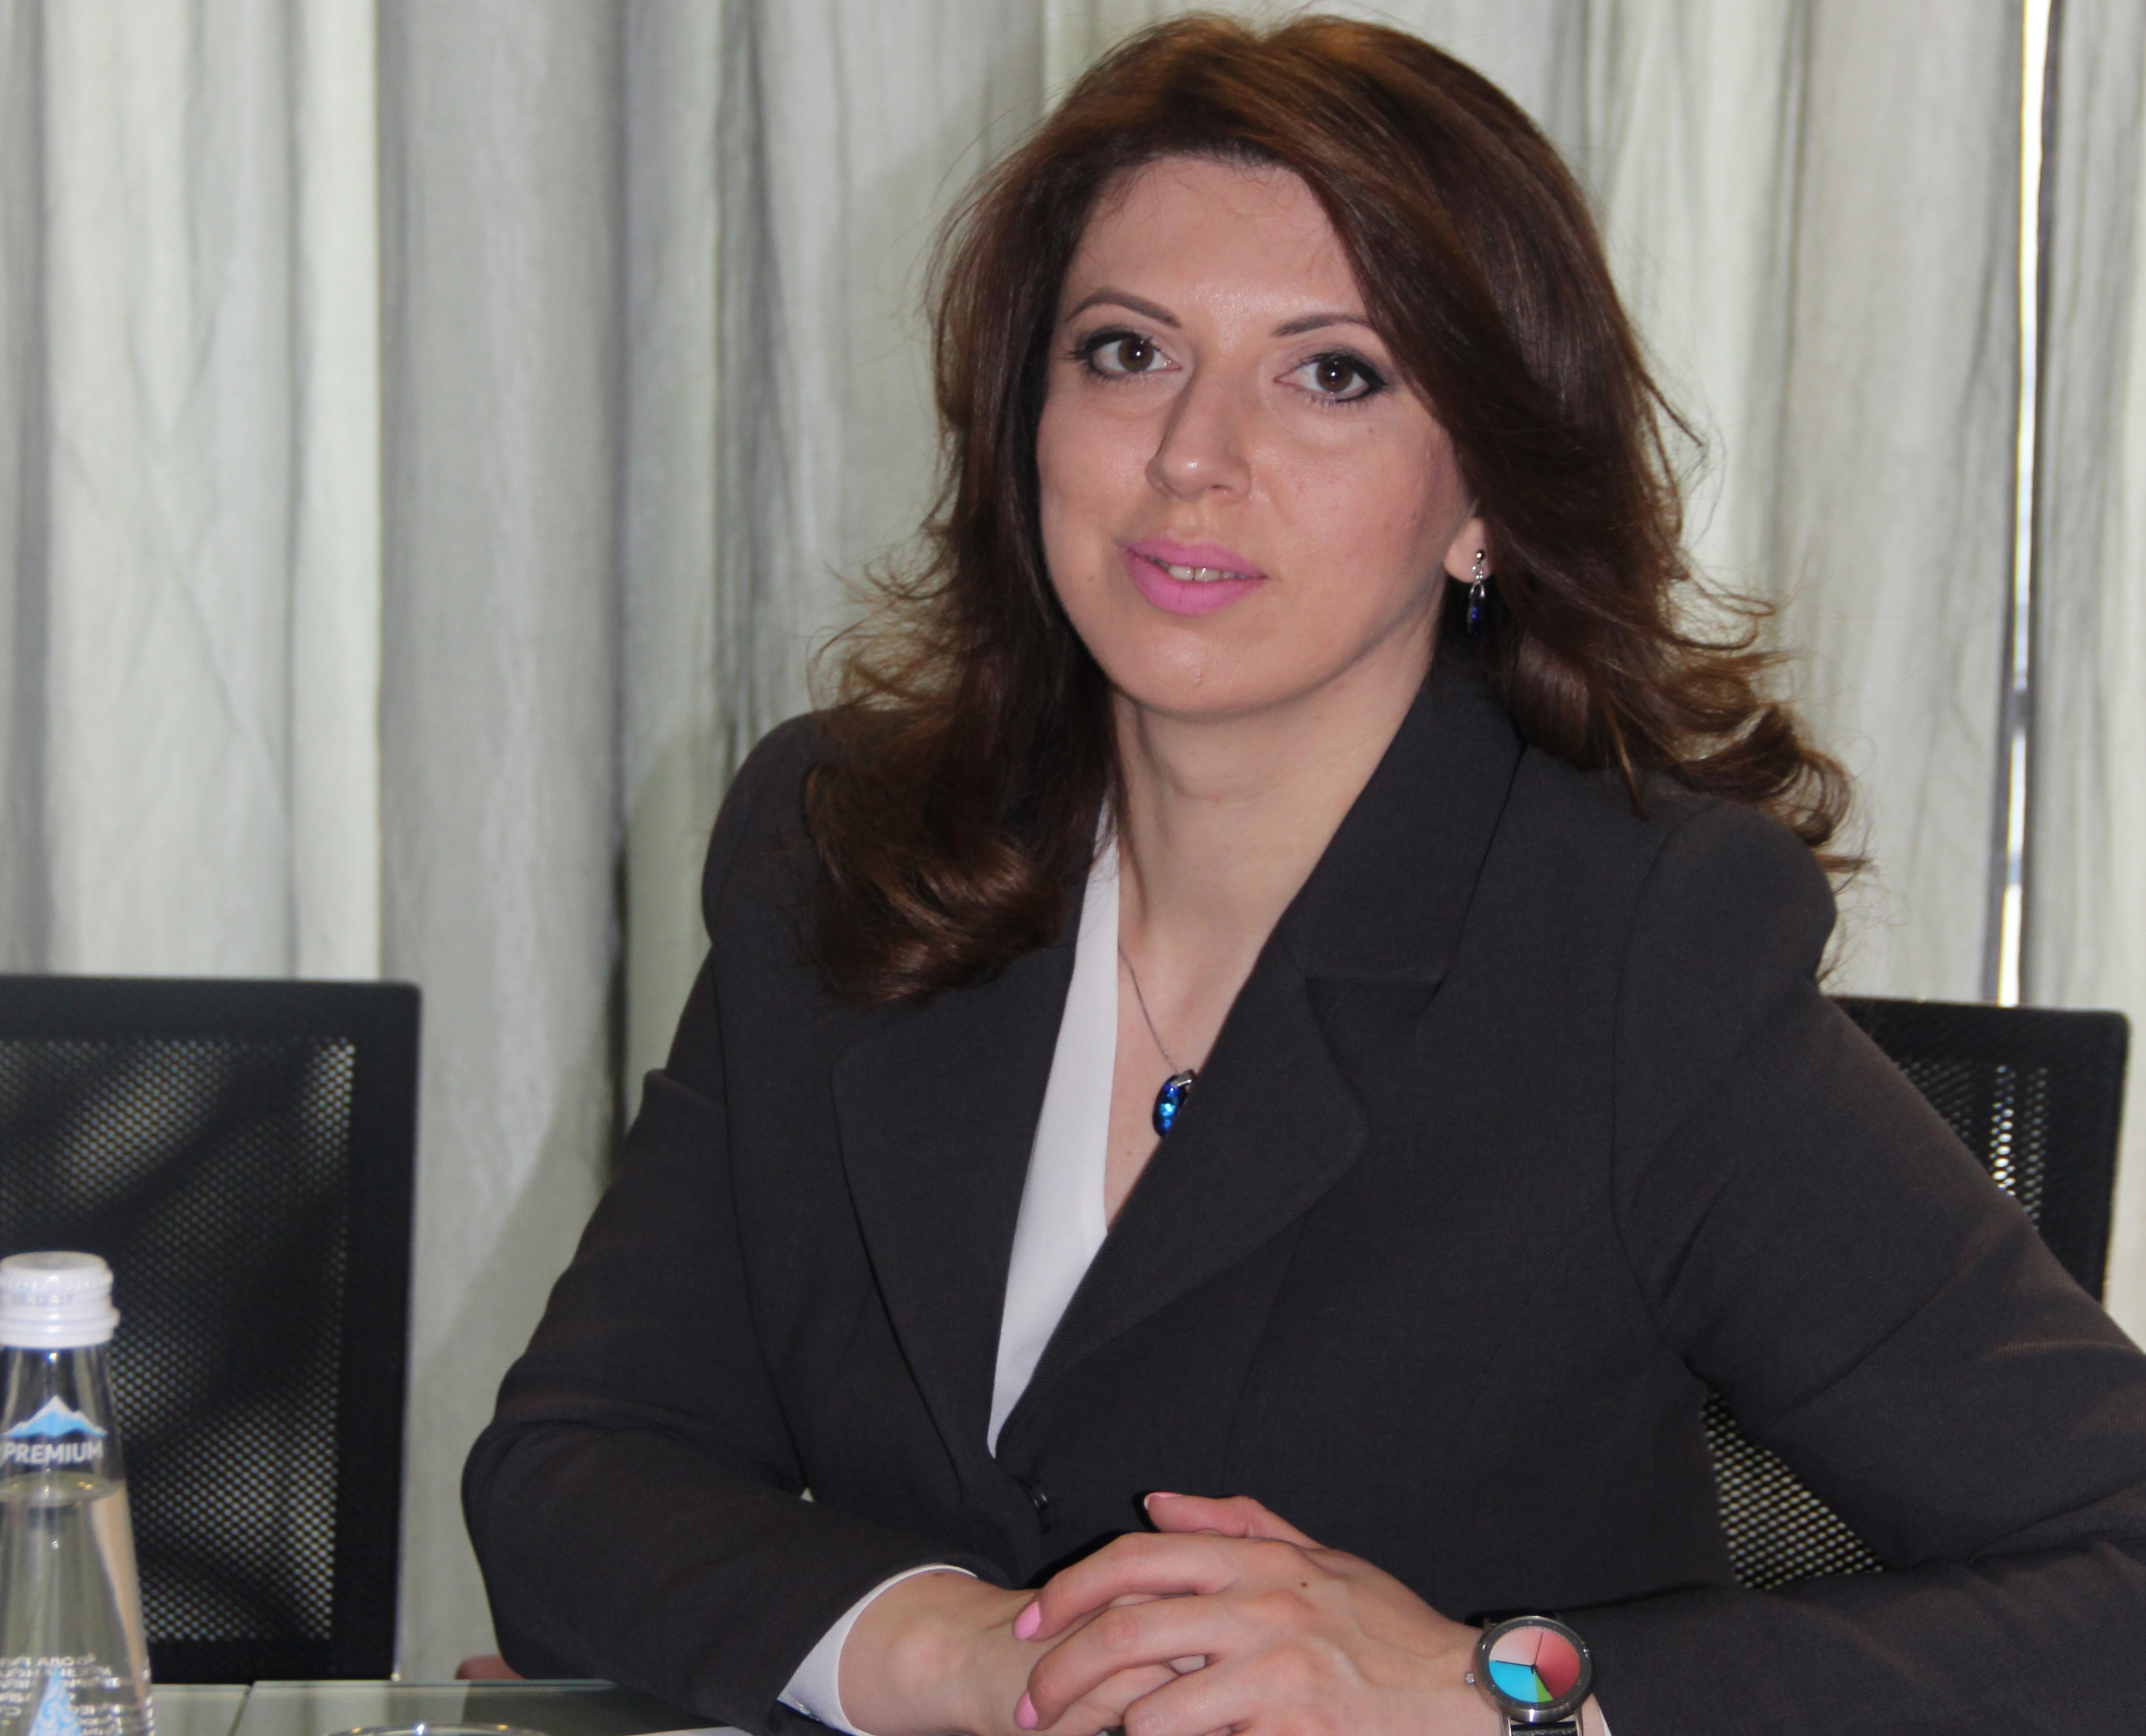 انتخاب السيدة تاميلا ميرتسخولافا فاليريفنا في منصب رئيس غرفة تجارة و صناعة جمهورية أبخازيا .